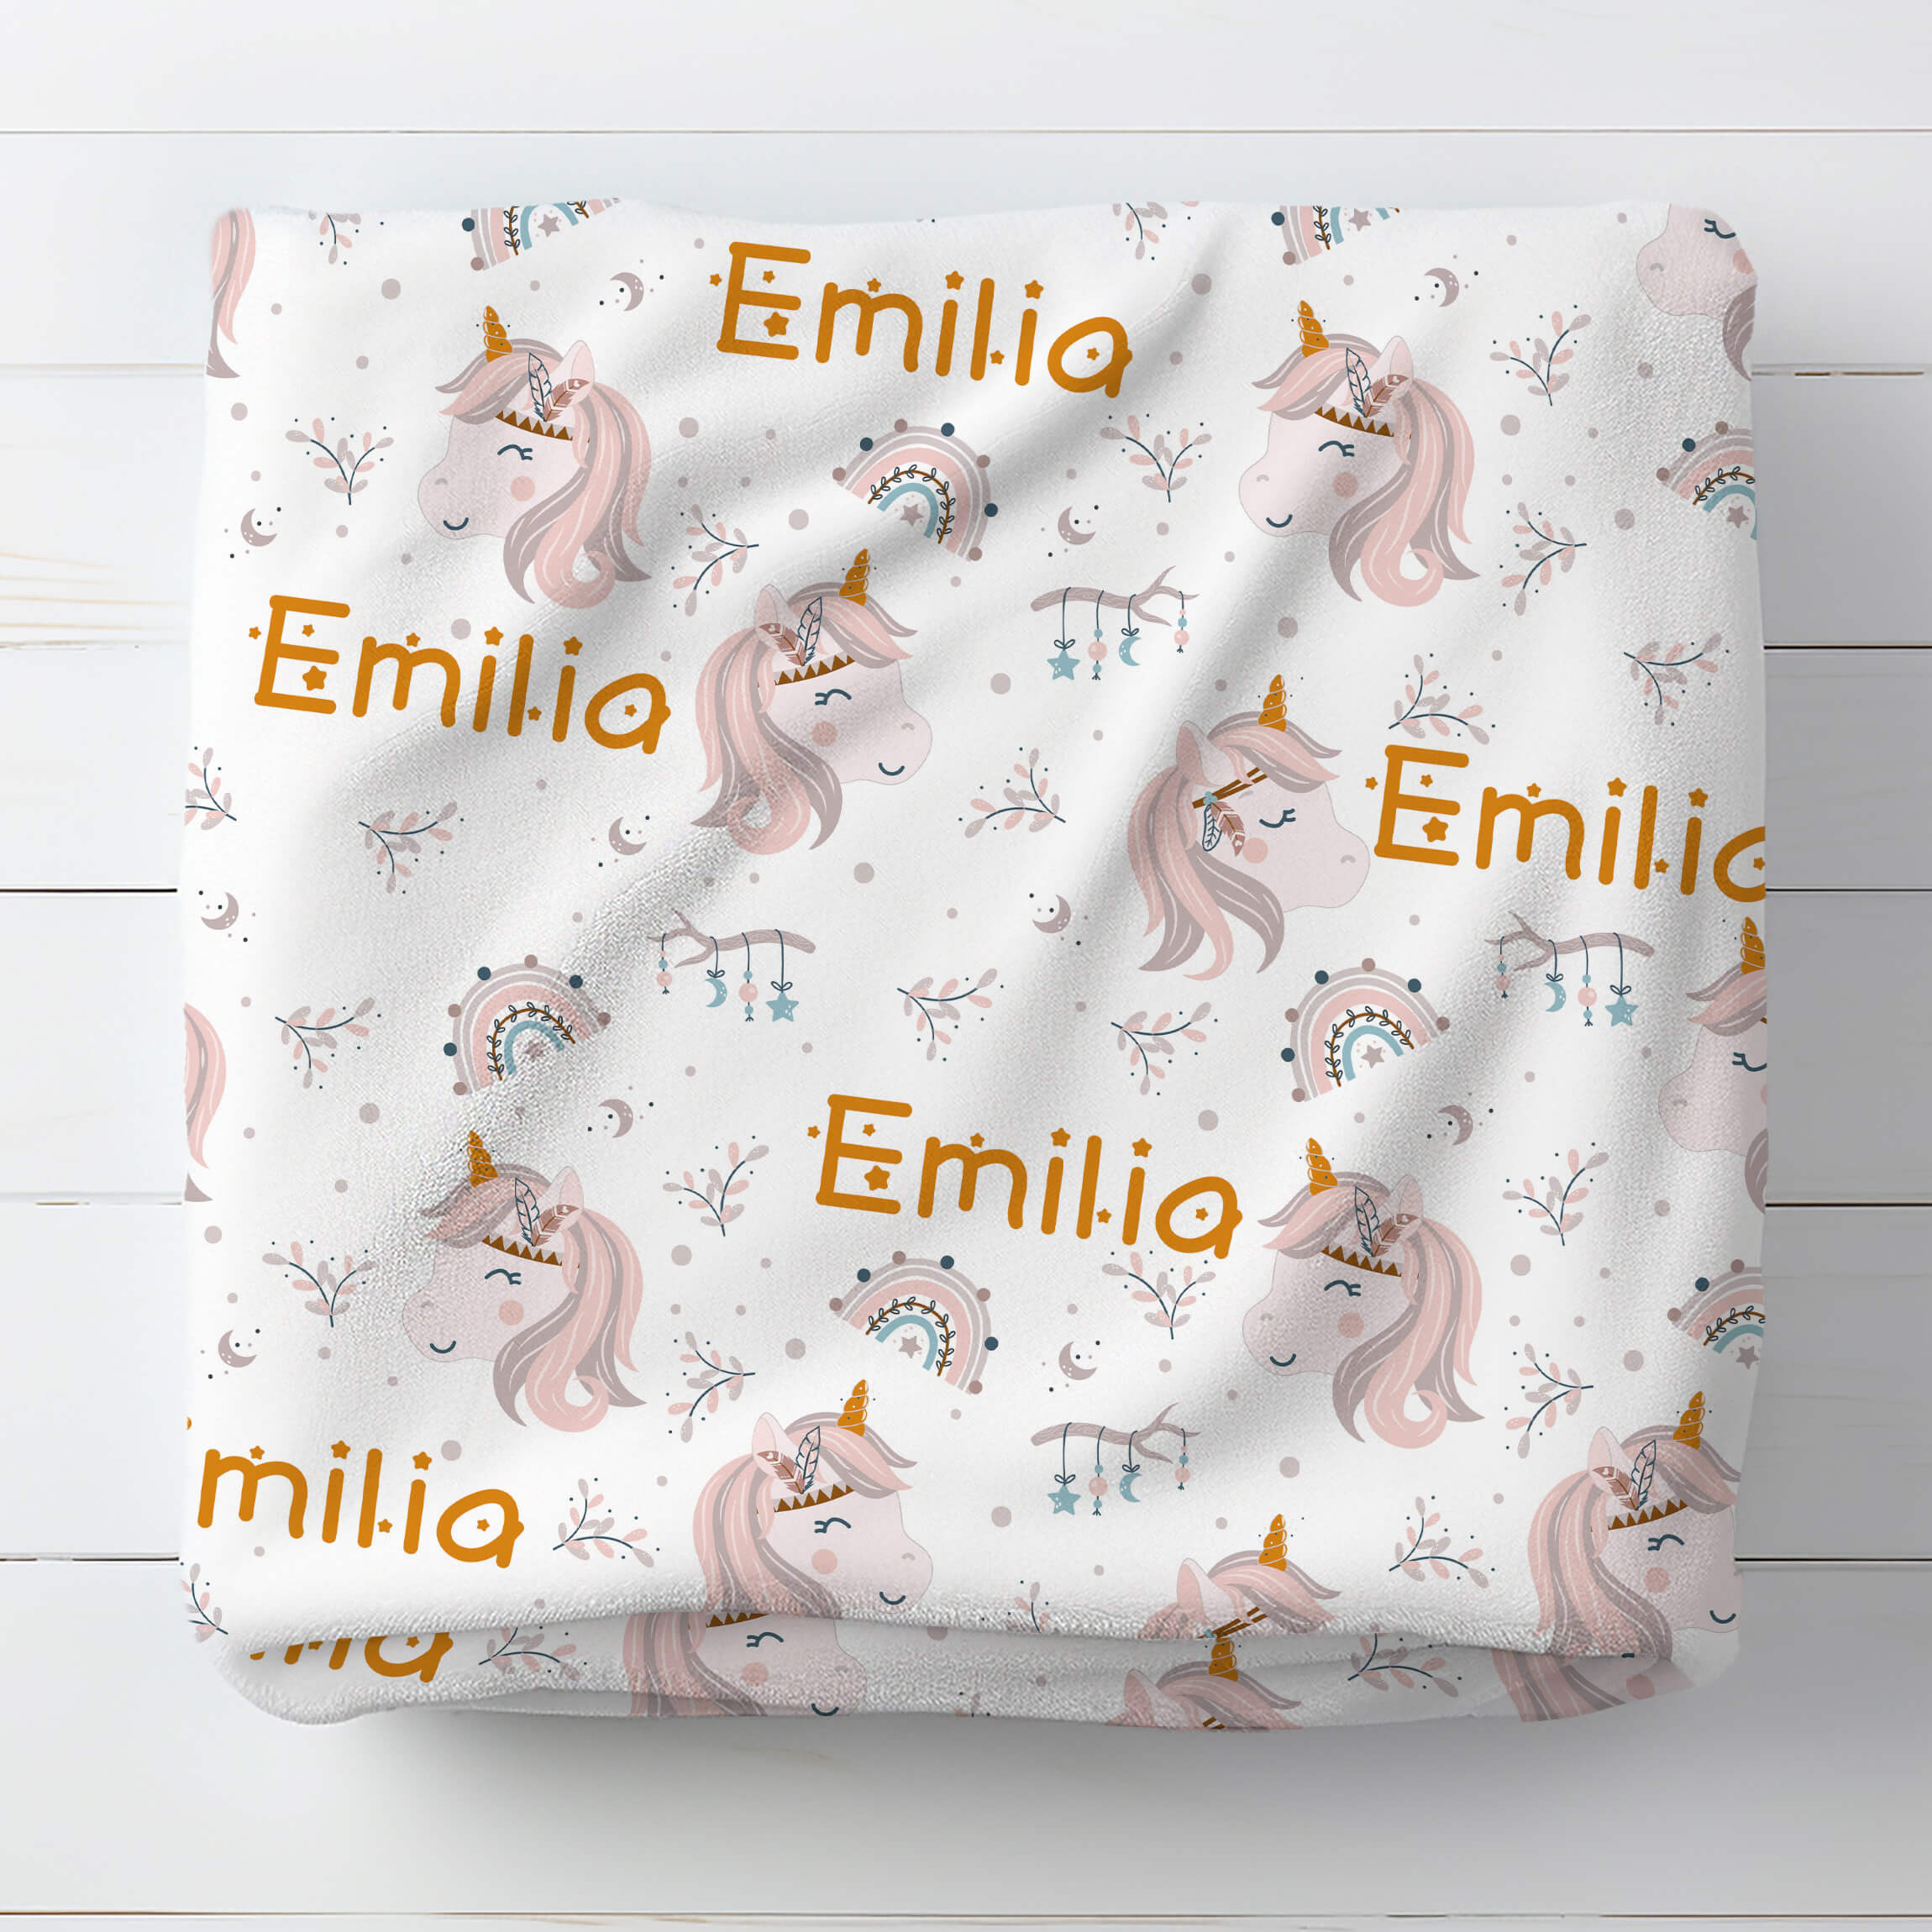 Personalized Name Blanket - Fantastic Unicorn